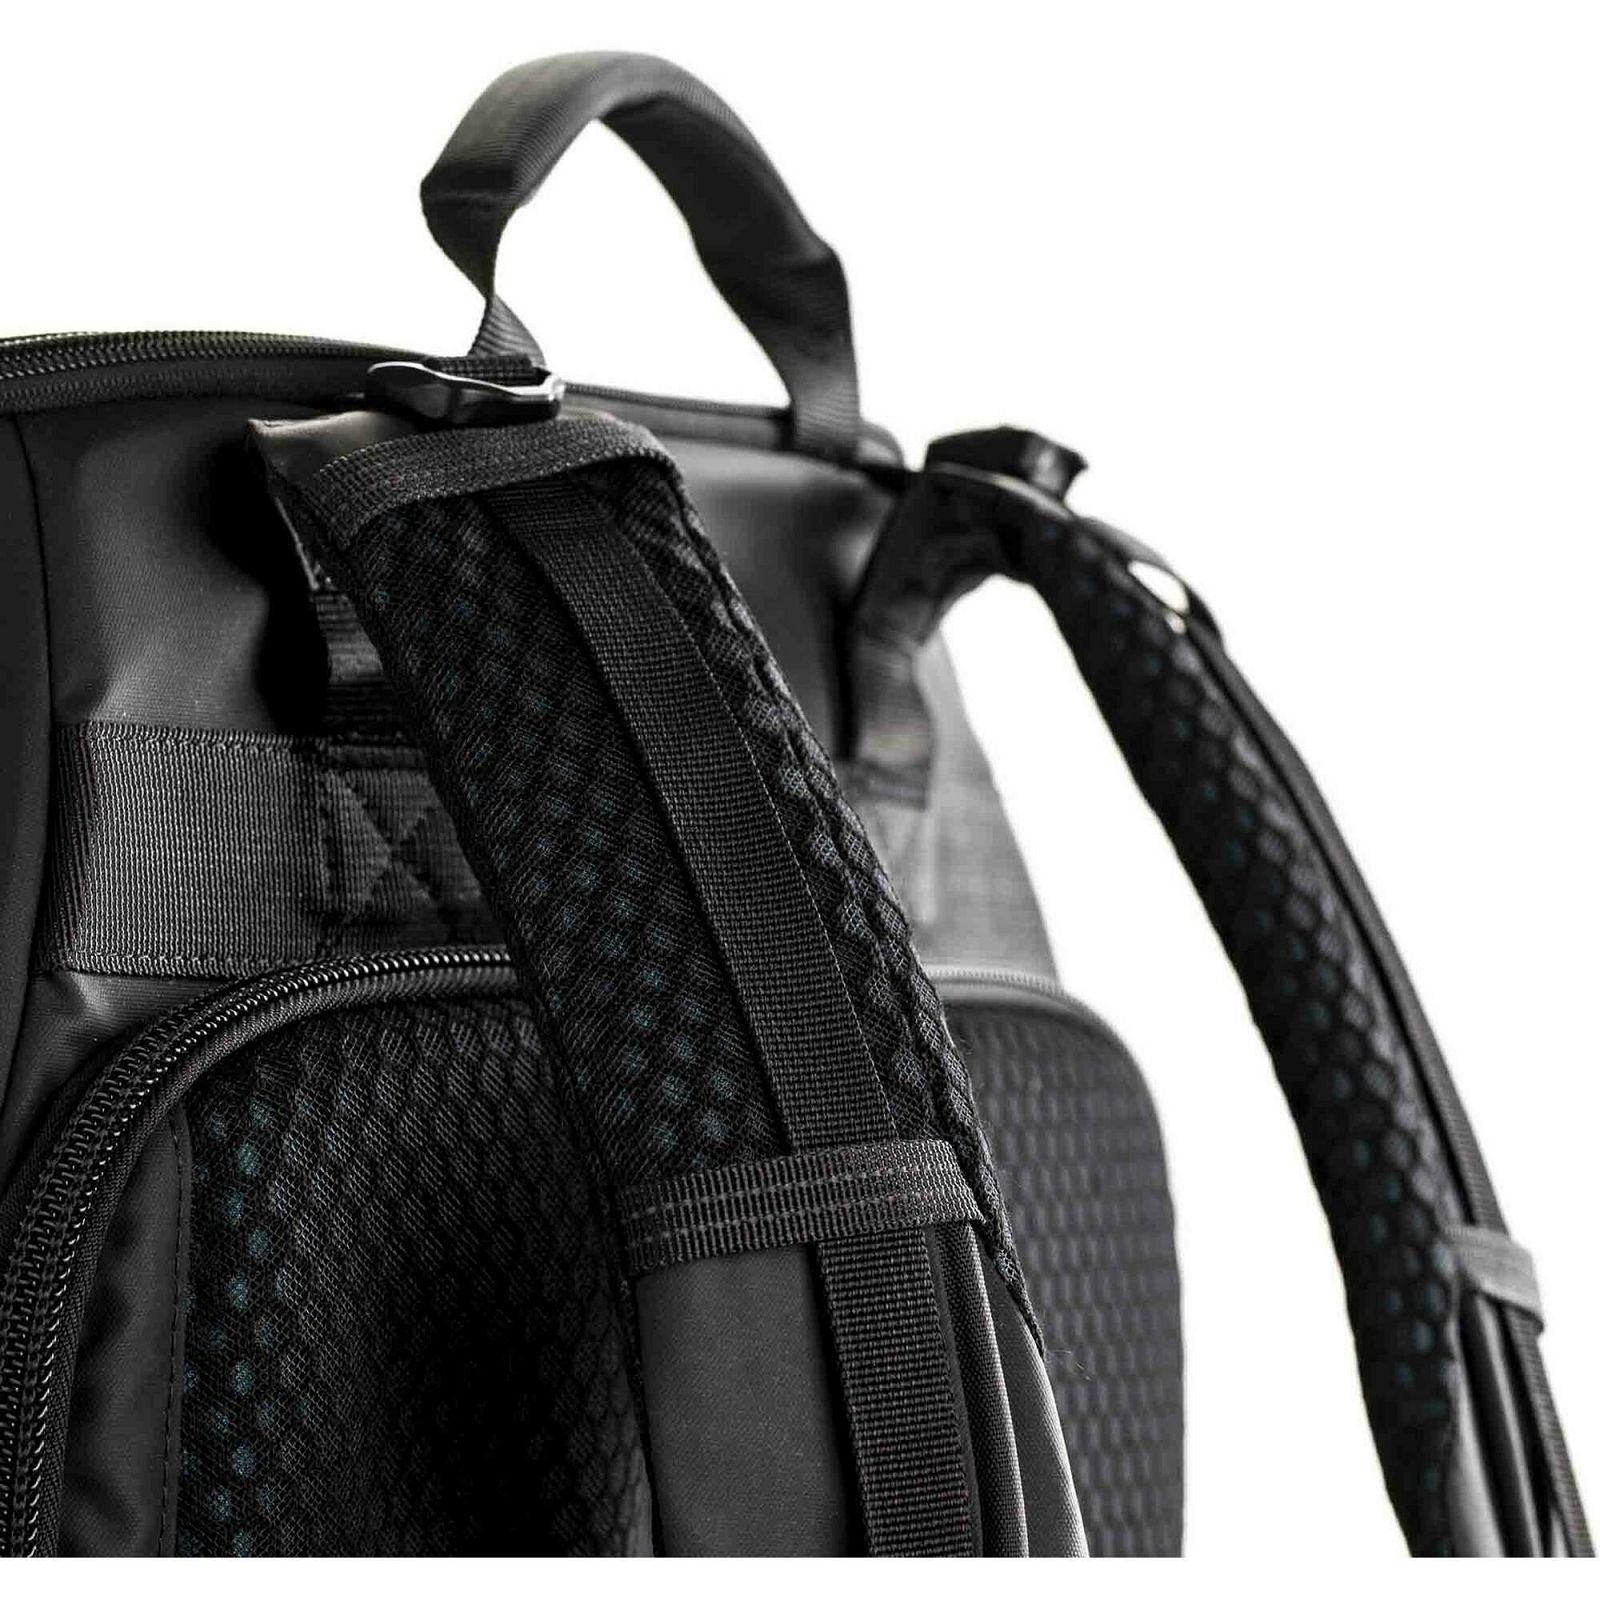 Tenba Axis v2 32L Backpack MultiCam Black